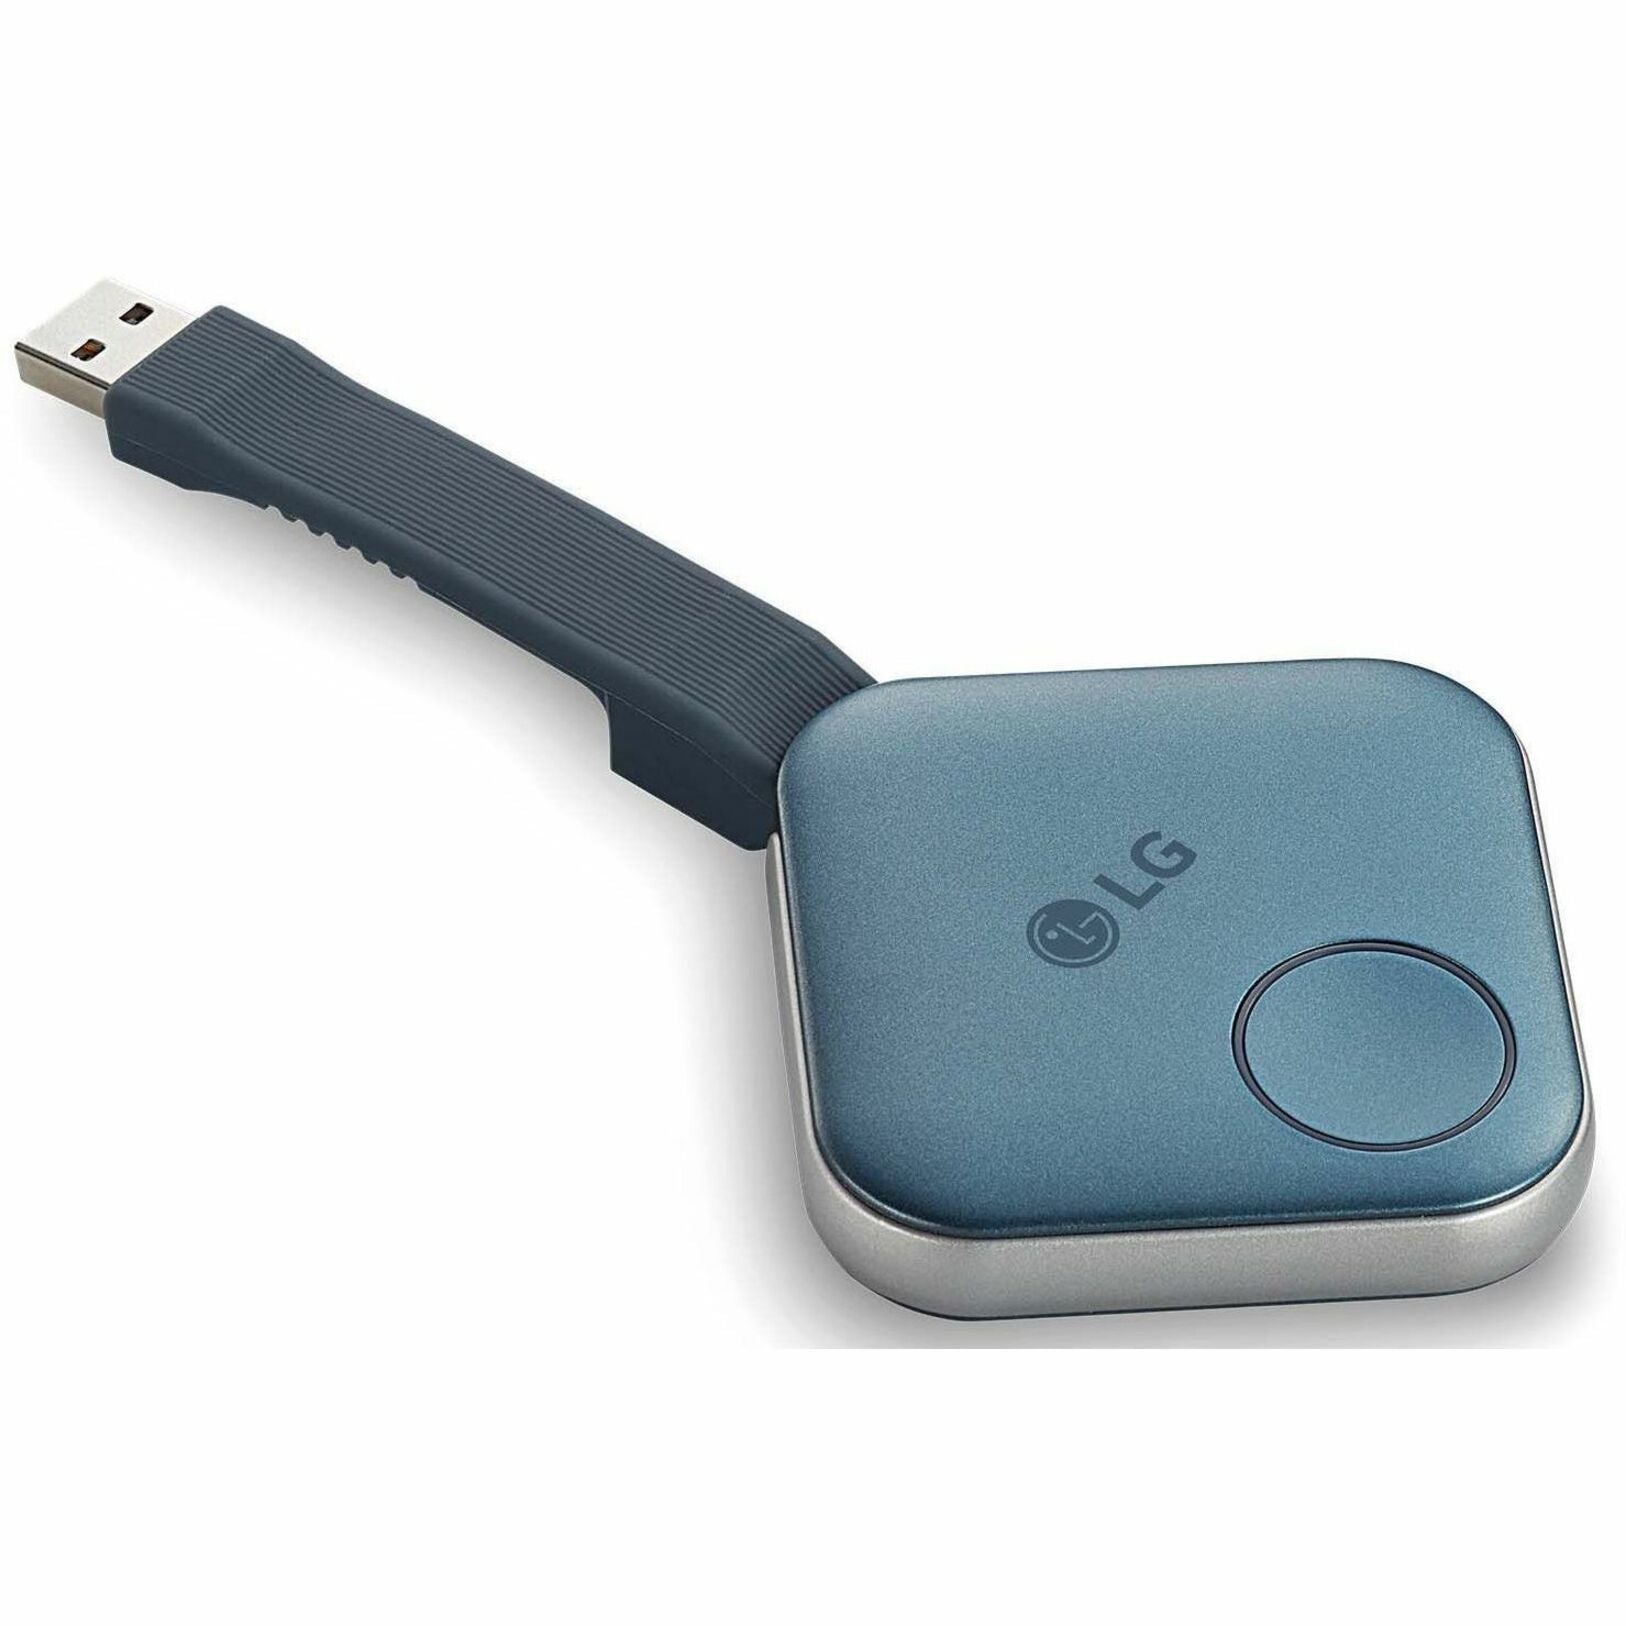 LG SC-00DA One:Quick Share Video Extender Transmitter, Wireless, USB, IEEE 802.11a/b/g/n/ac